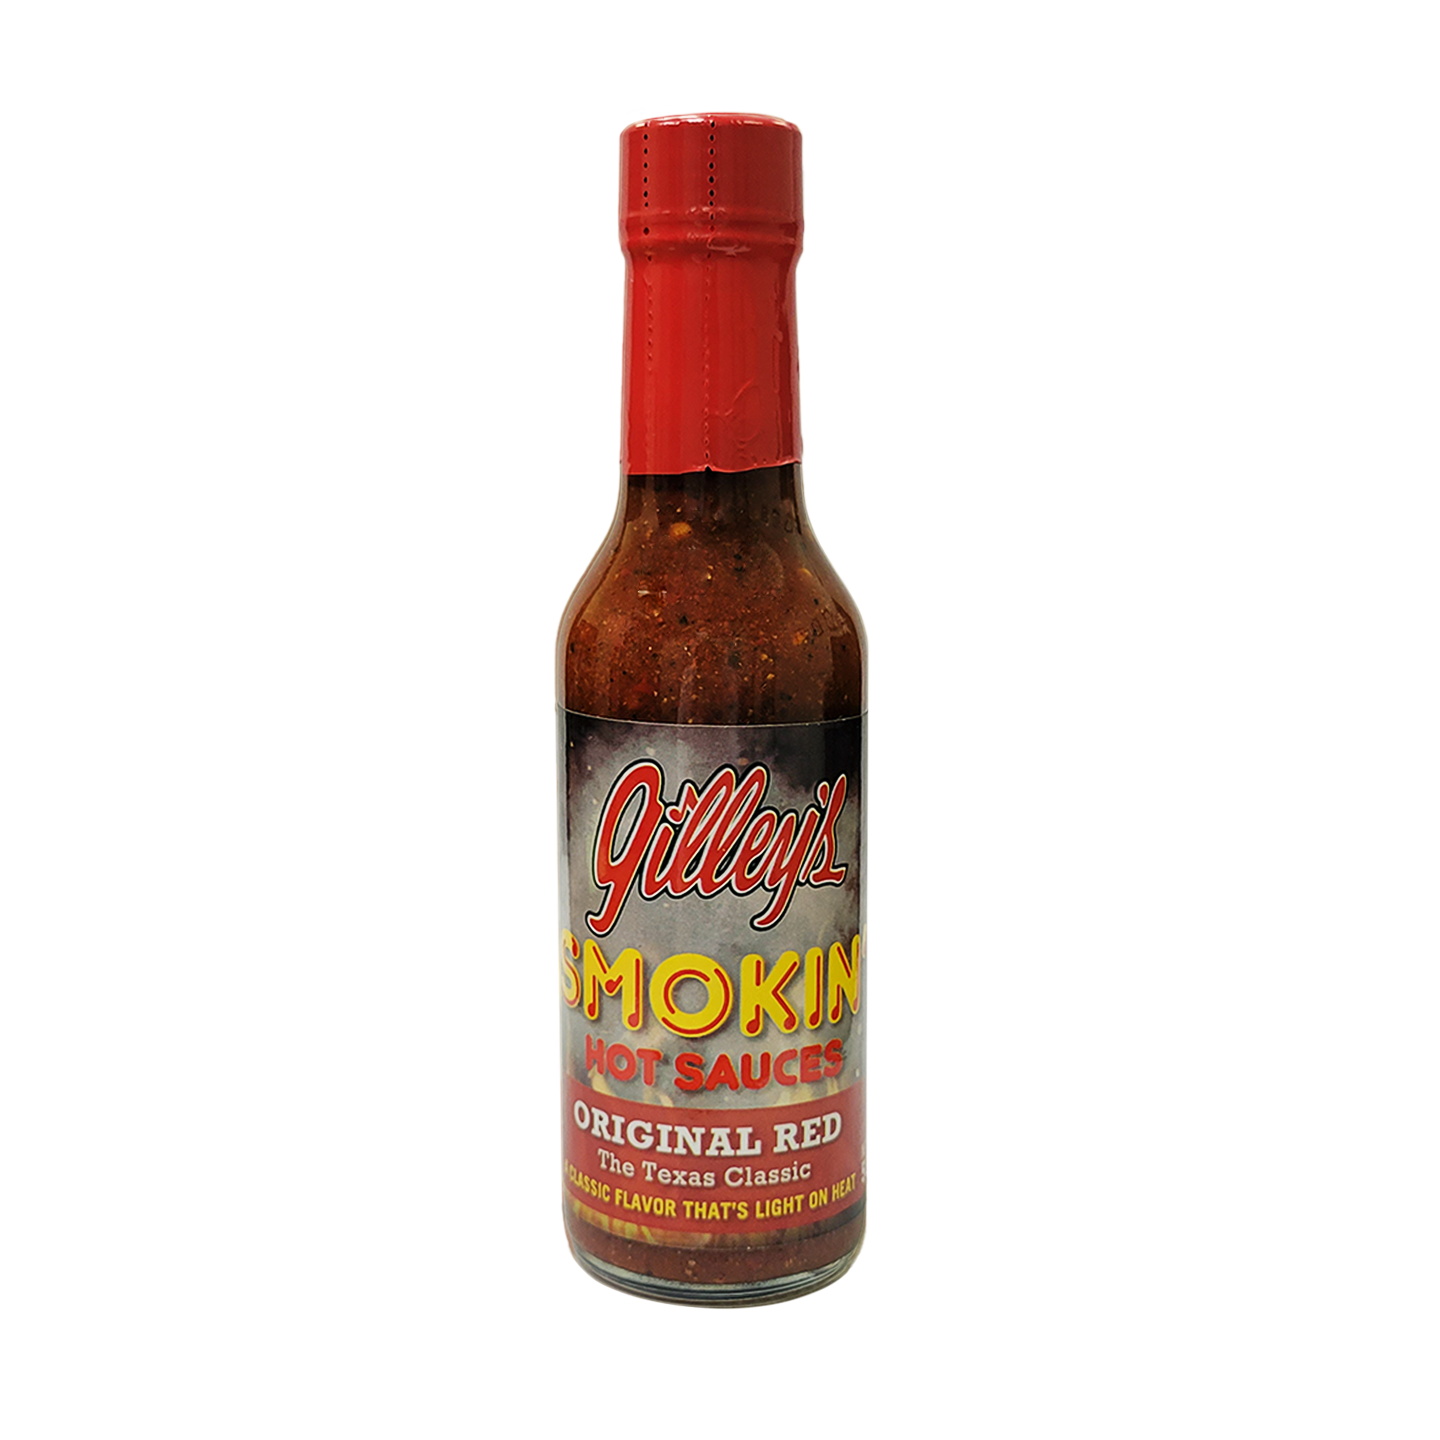 Gilley's Smokin' Hot Sauce Original Red